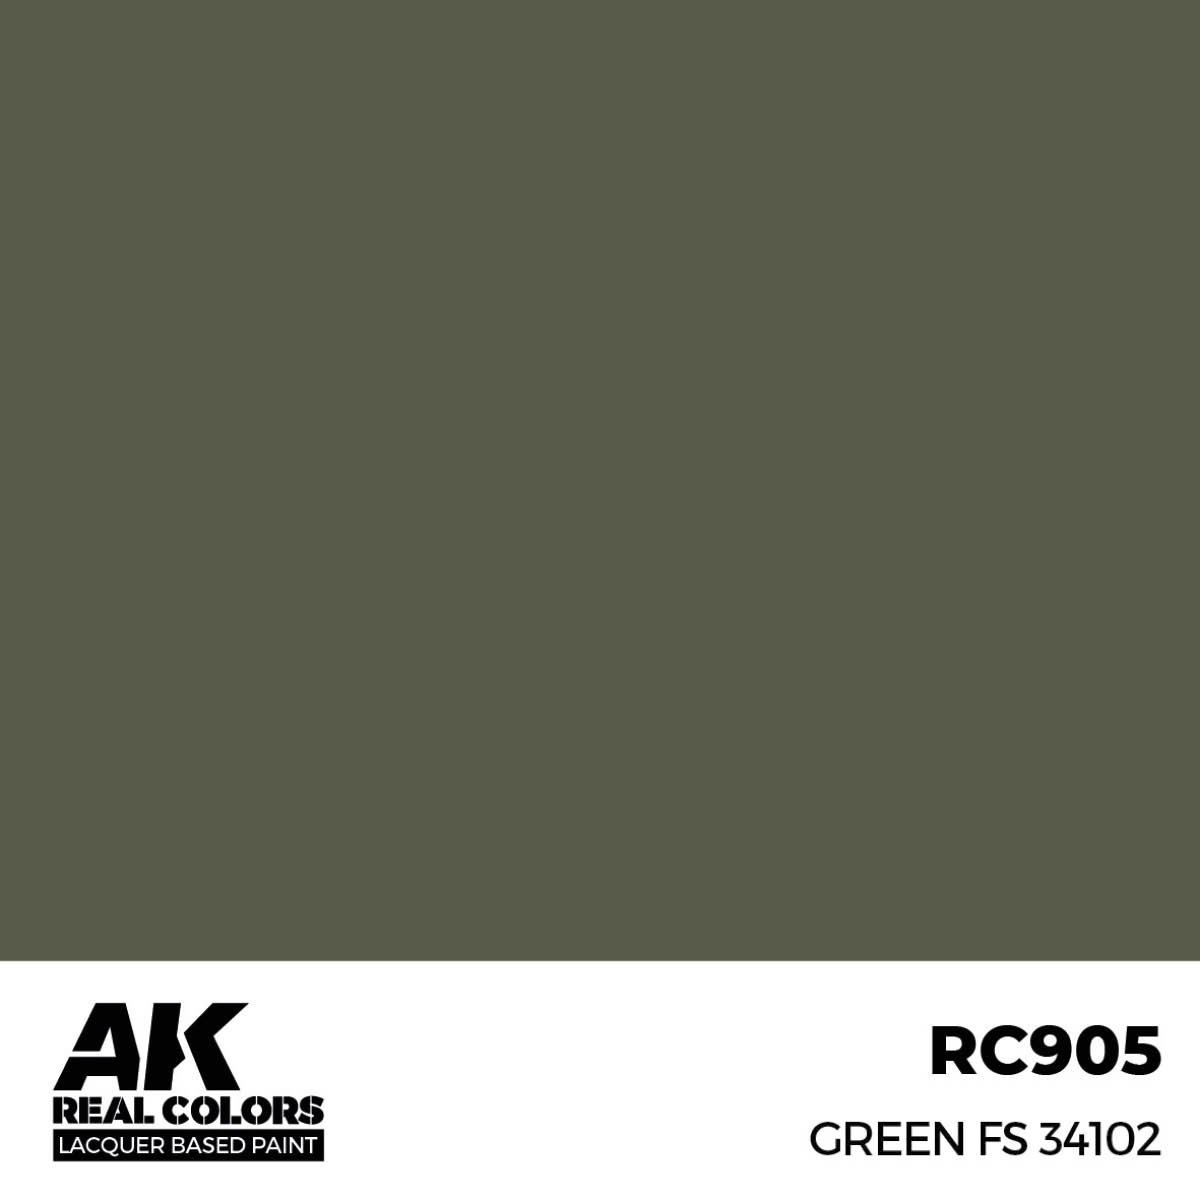 Green FS 34102